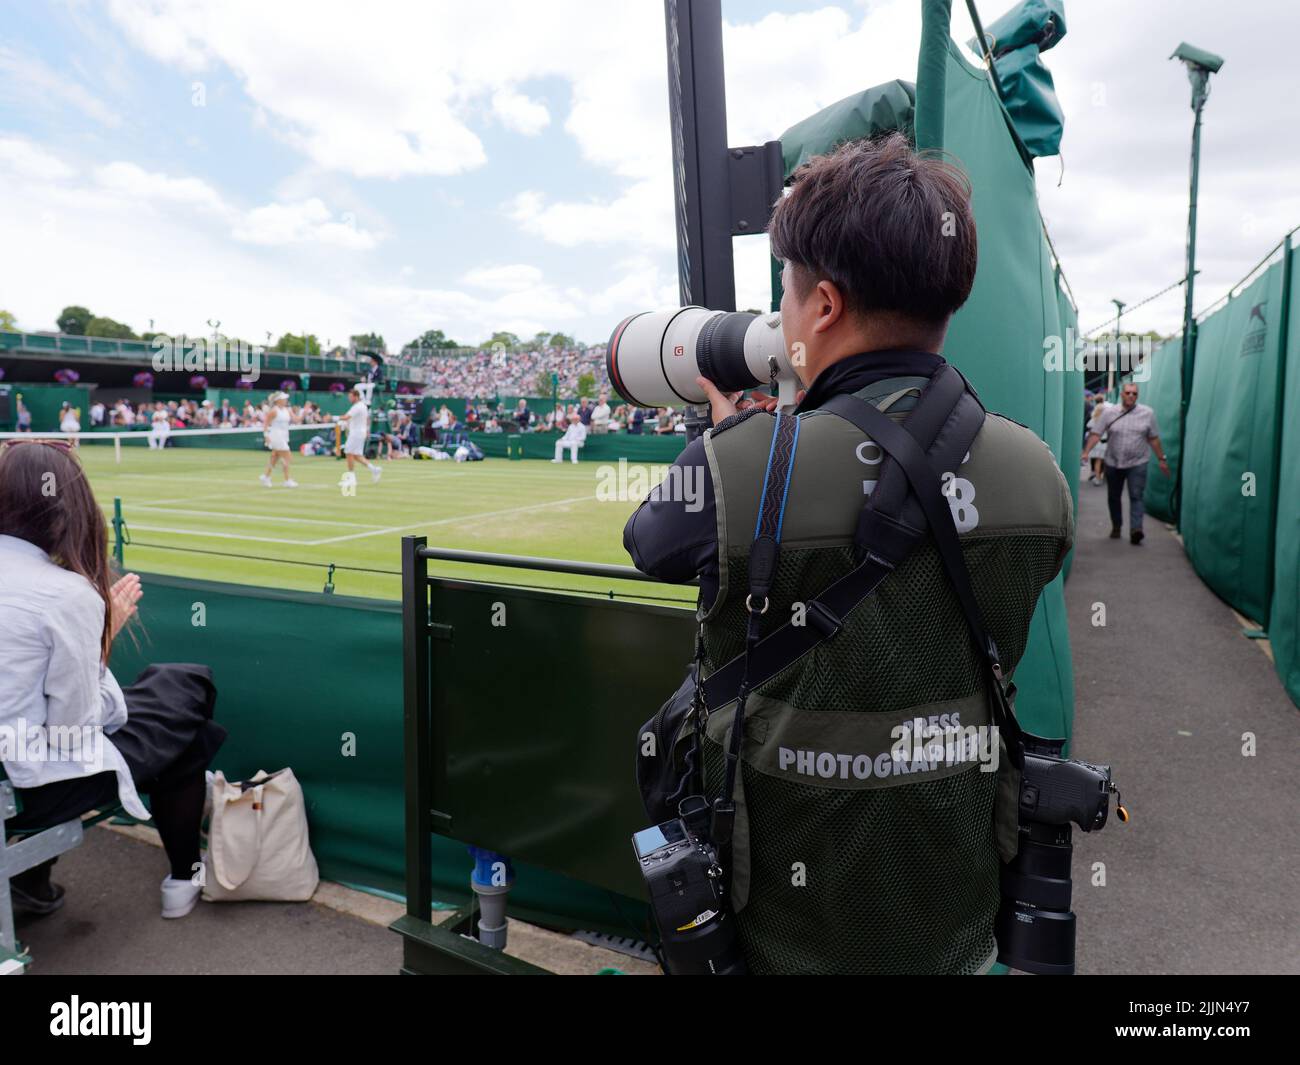 Wimbledon, Grand Londres, Angleterre, 02 juillet 2022: Championnat de tennis de Wimbledon. Photographe officiel au travail observant un match de tennis. Banque D'Images